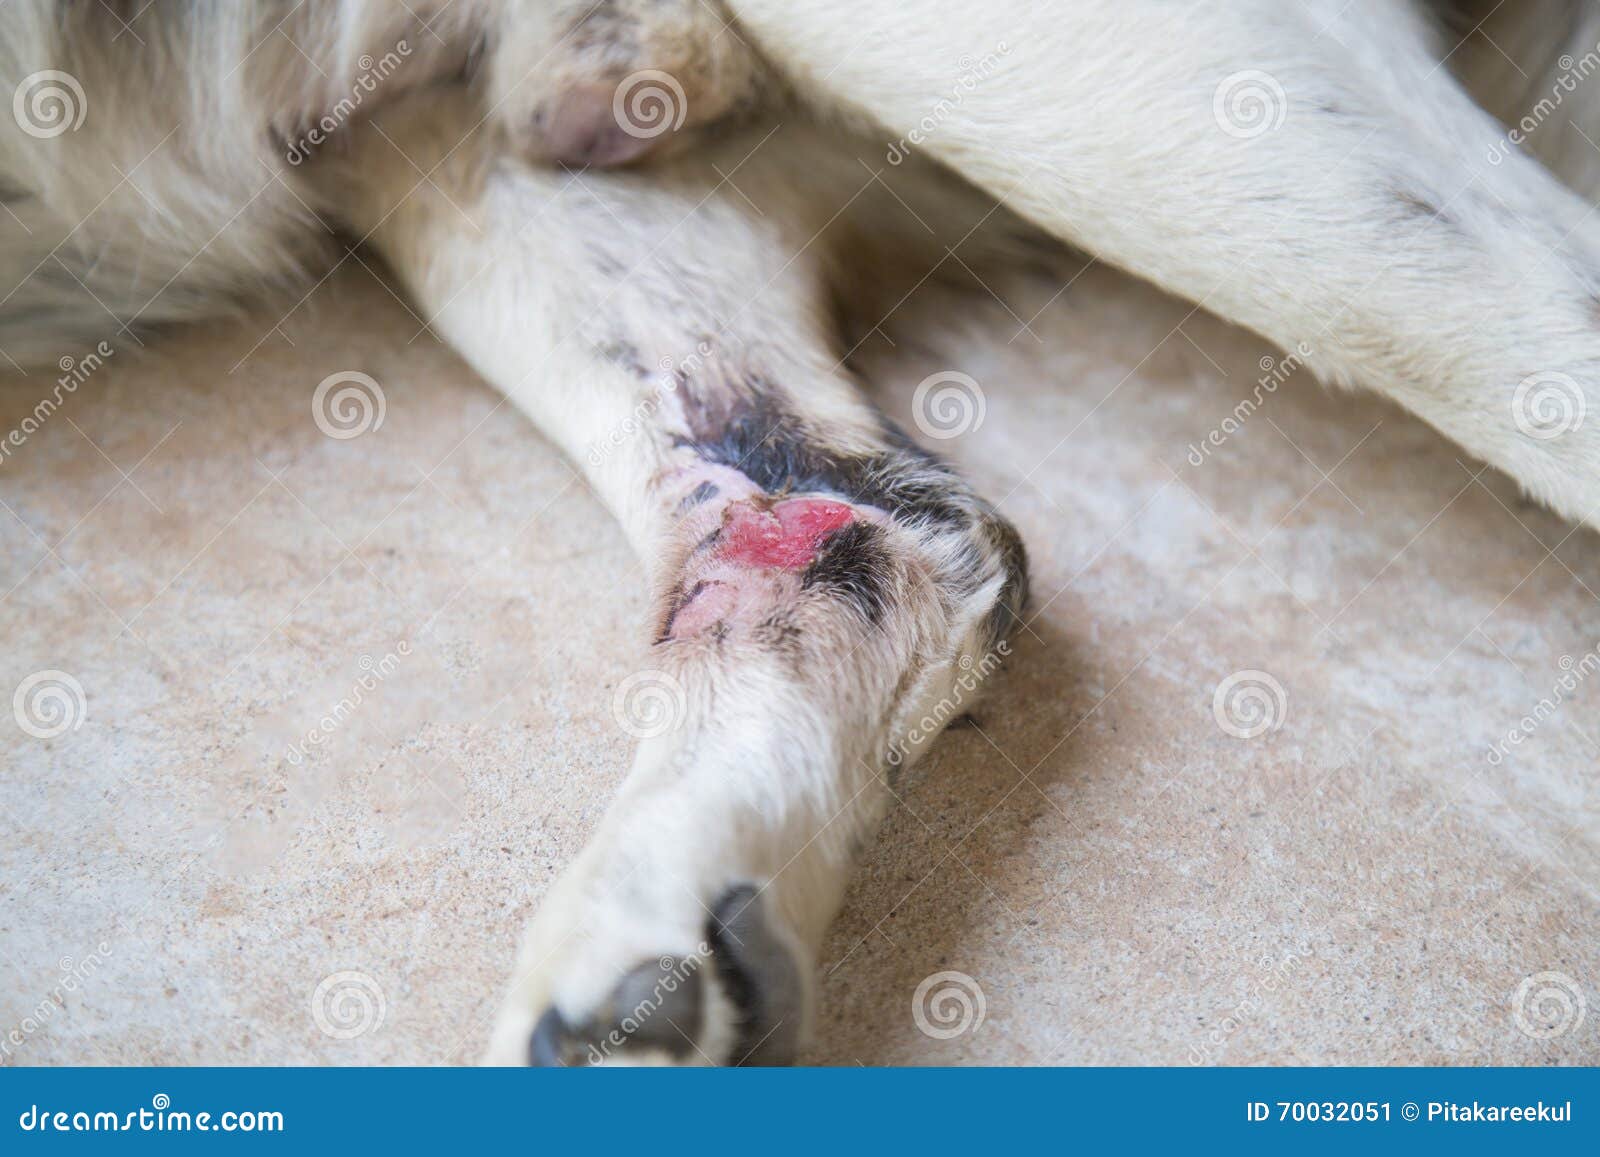 Verletzung Auf Bein Des Hundes Stockbild - Bild wunde, welpe: 70032051